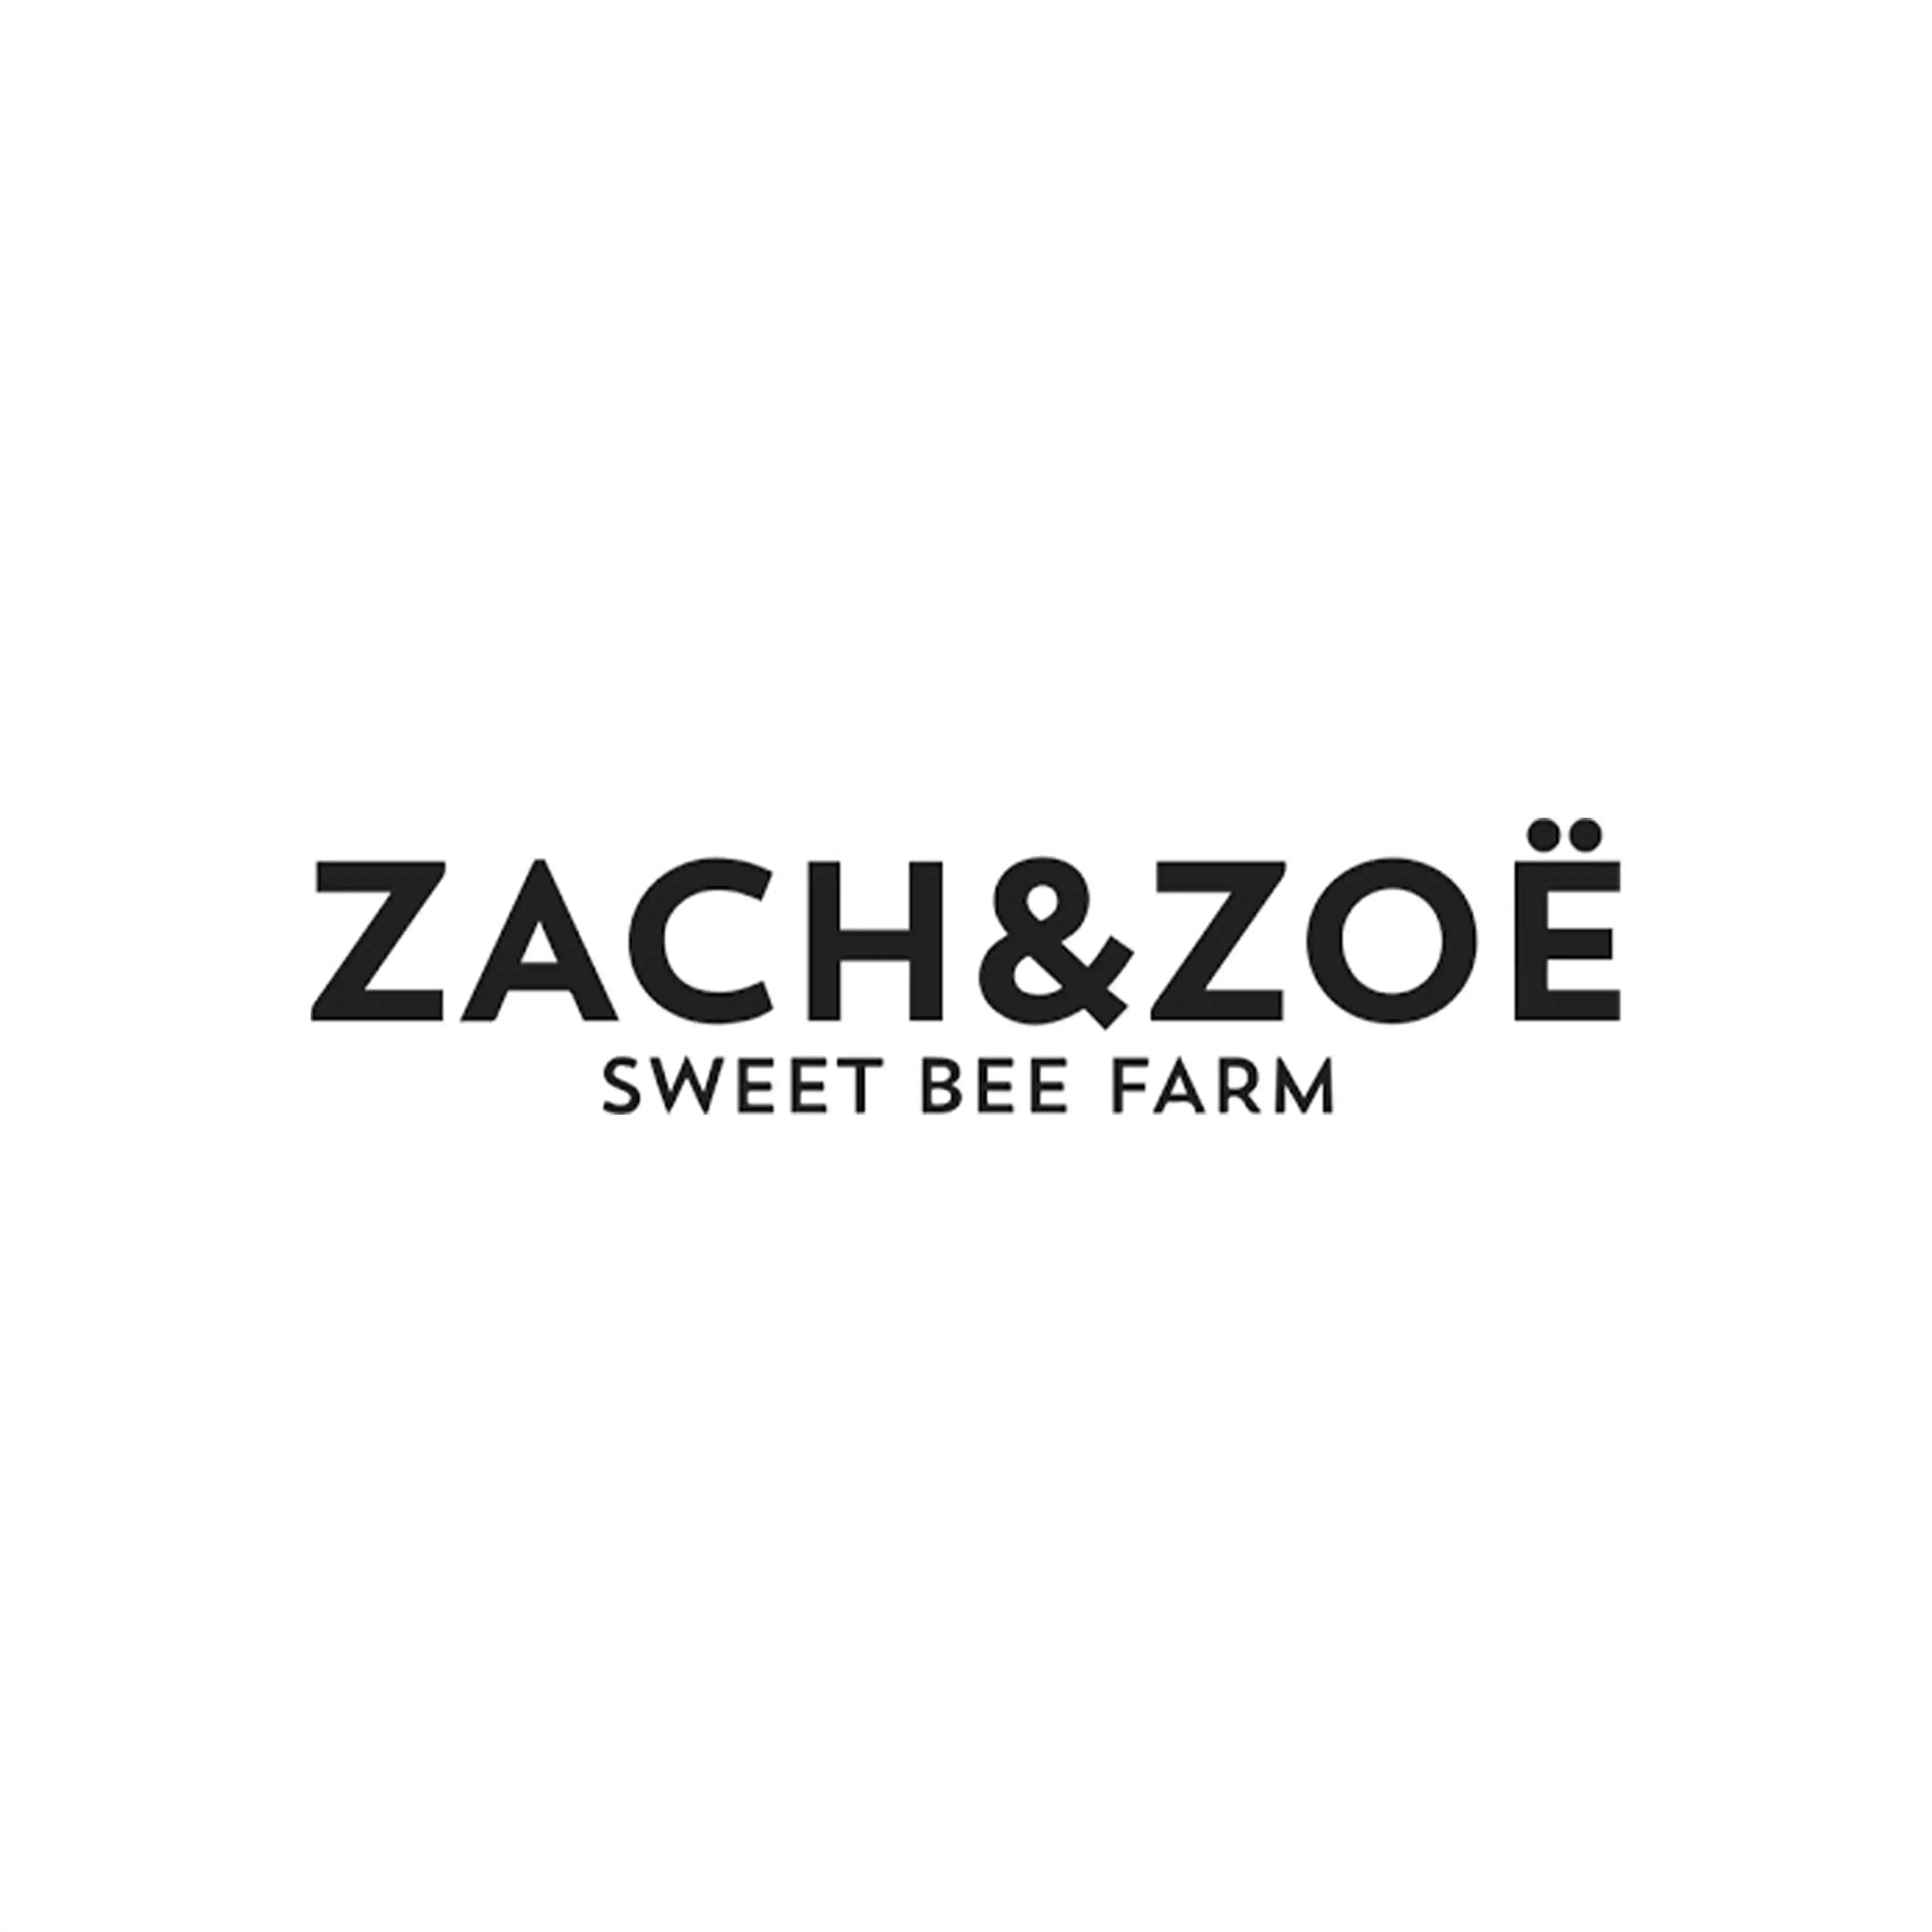 Zachandzoe discount codes